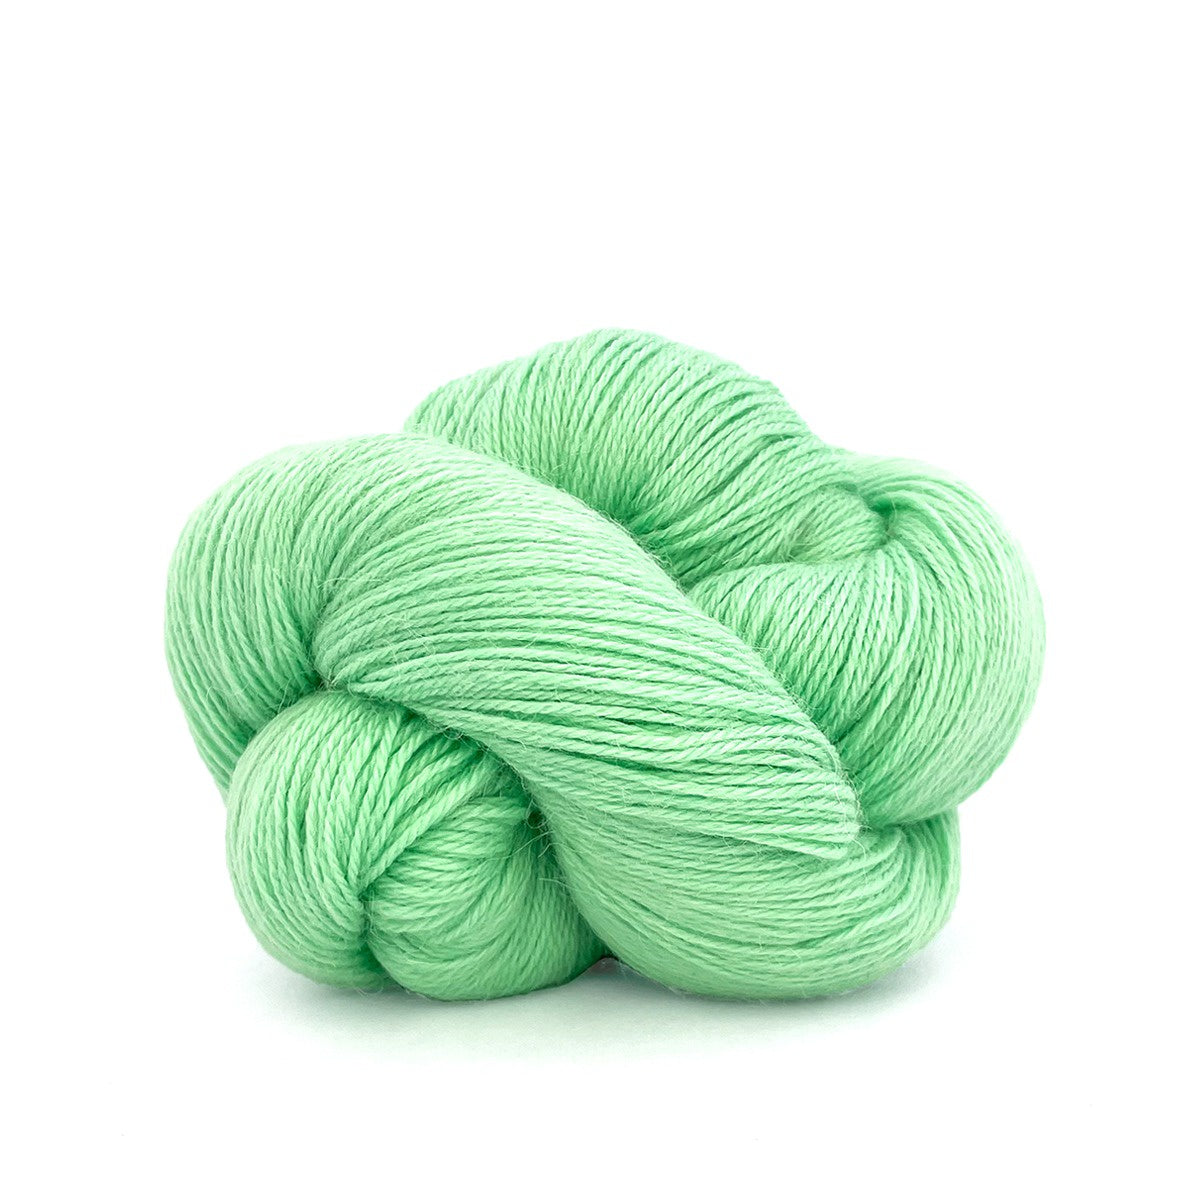 Spundamentals Basic Sock Kit (Pastel Green)